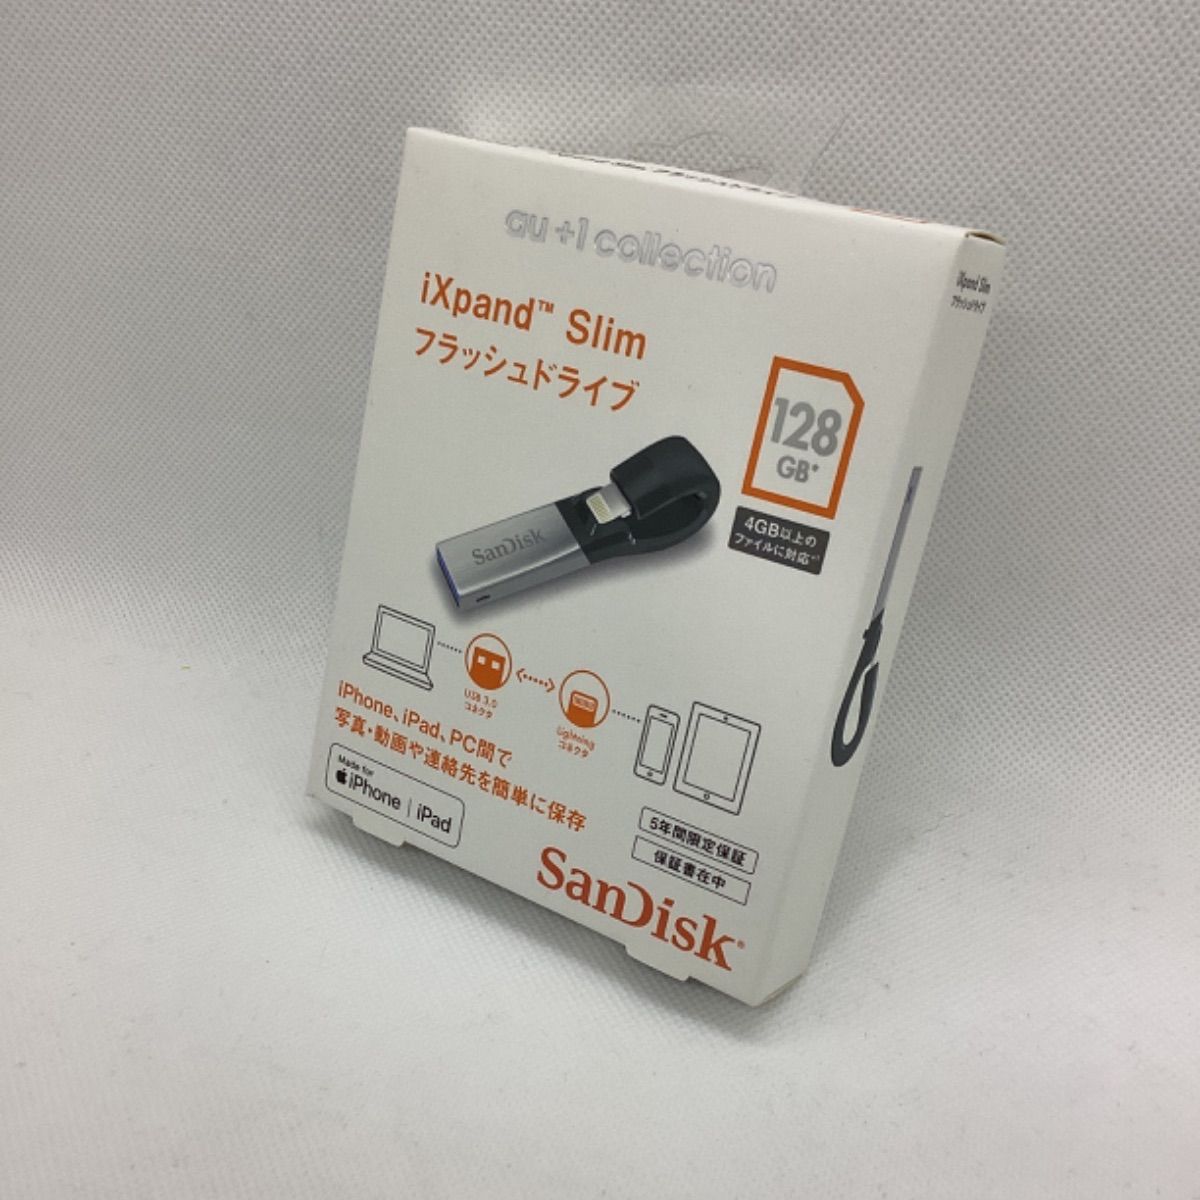 iXpand Slim フラッシュドライブ128GB  SanDisk製